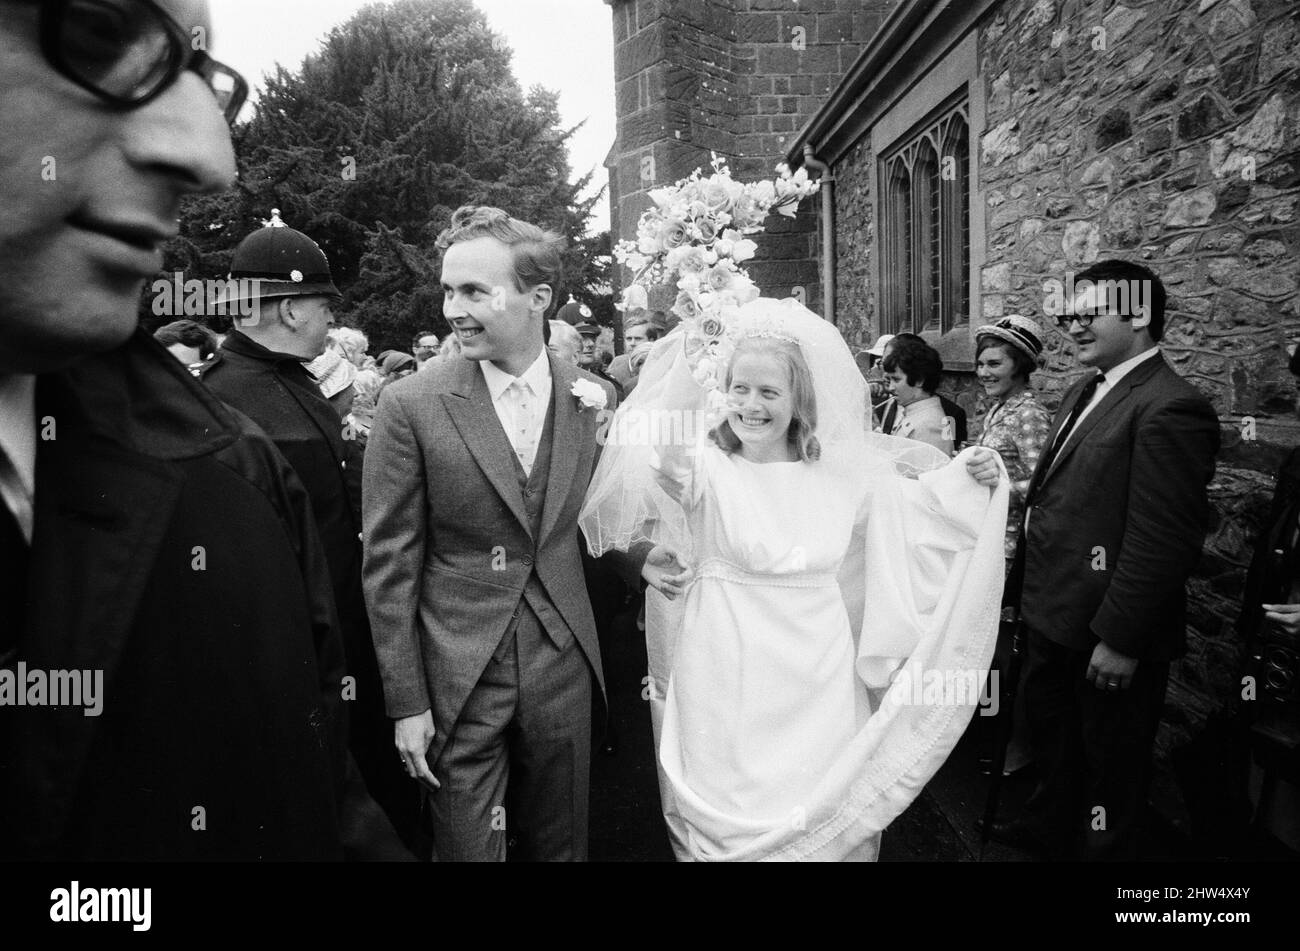 Robin Wilson Weds Joy Crispin at St Gregory's Church, Dawlish, Devon, mercoledì 7th agosto 1968. Robin Wilson è figlio del primo ministro britannico Harold Wilson. Foto Stock